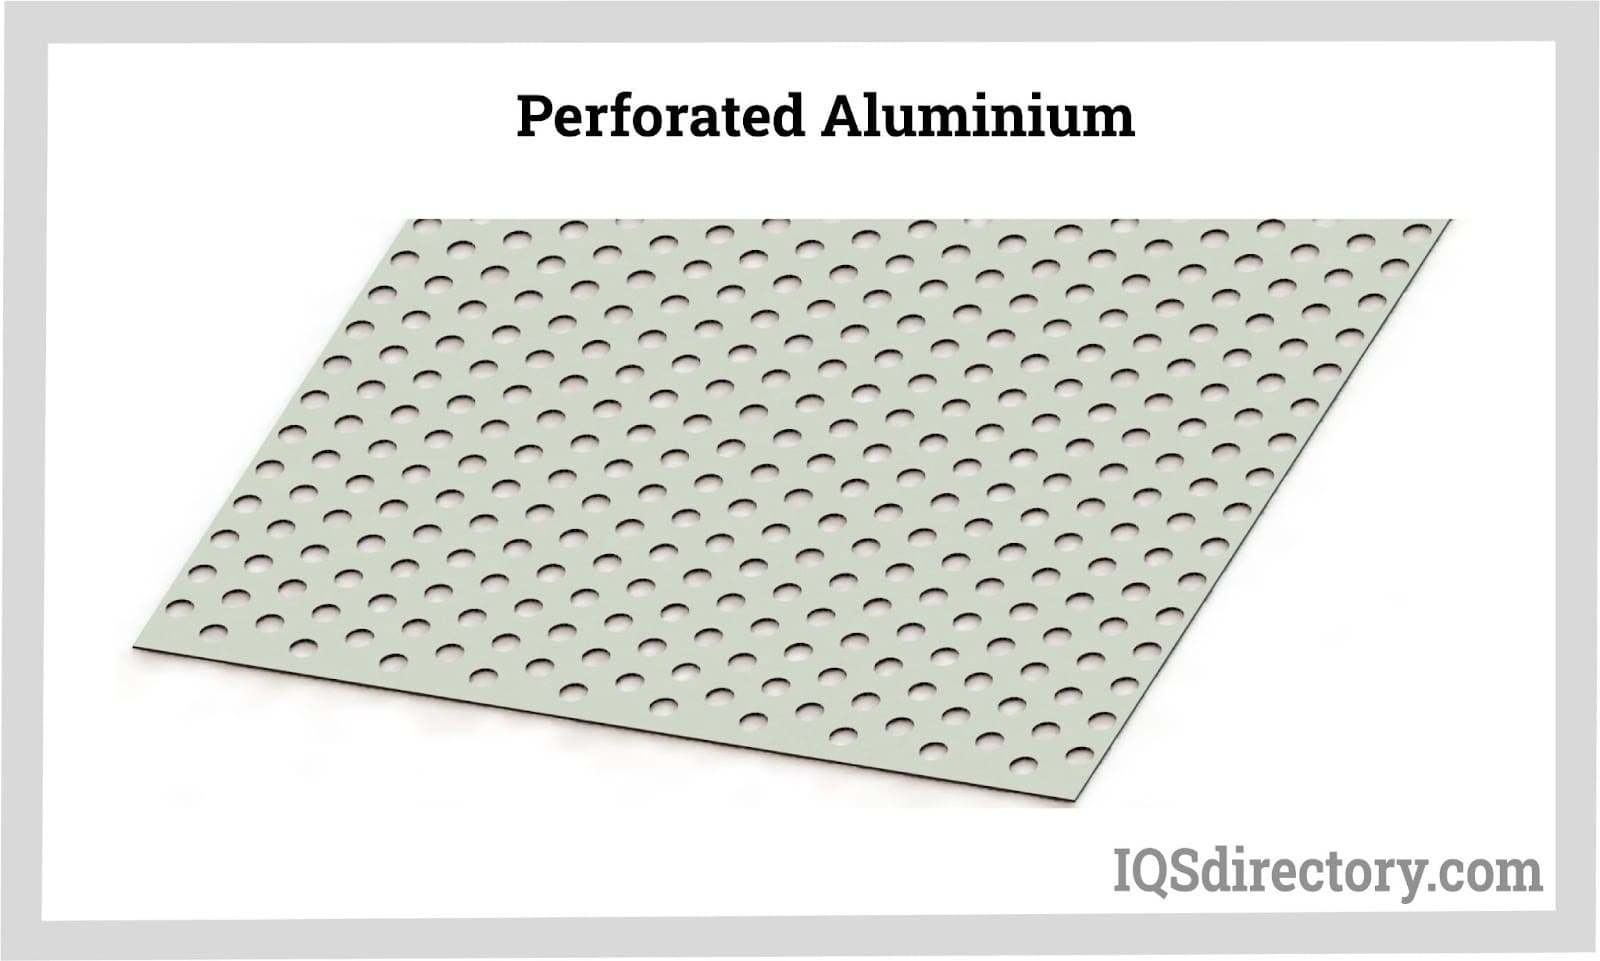 Perforated Aluminum